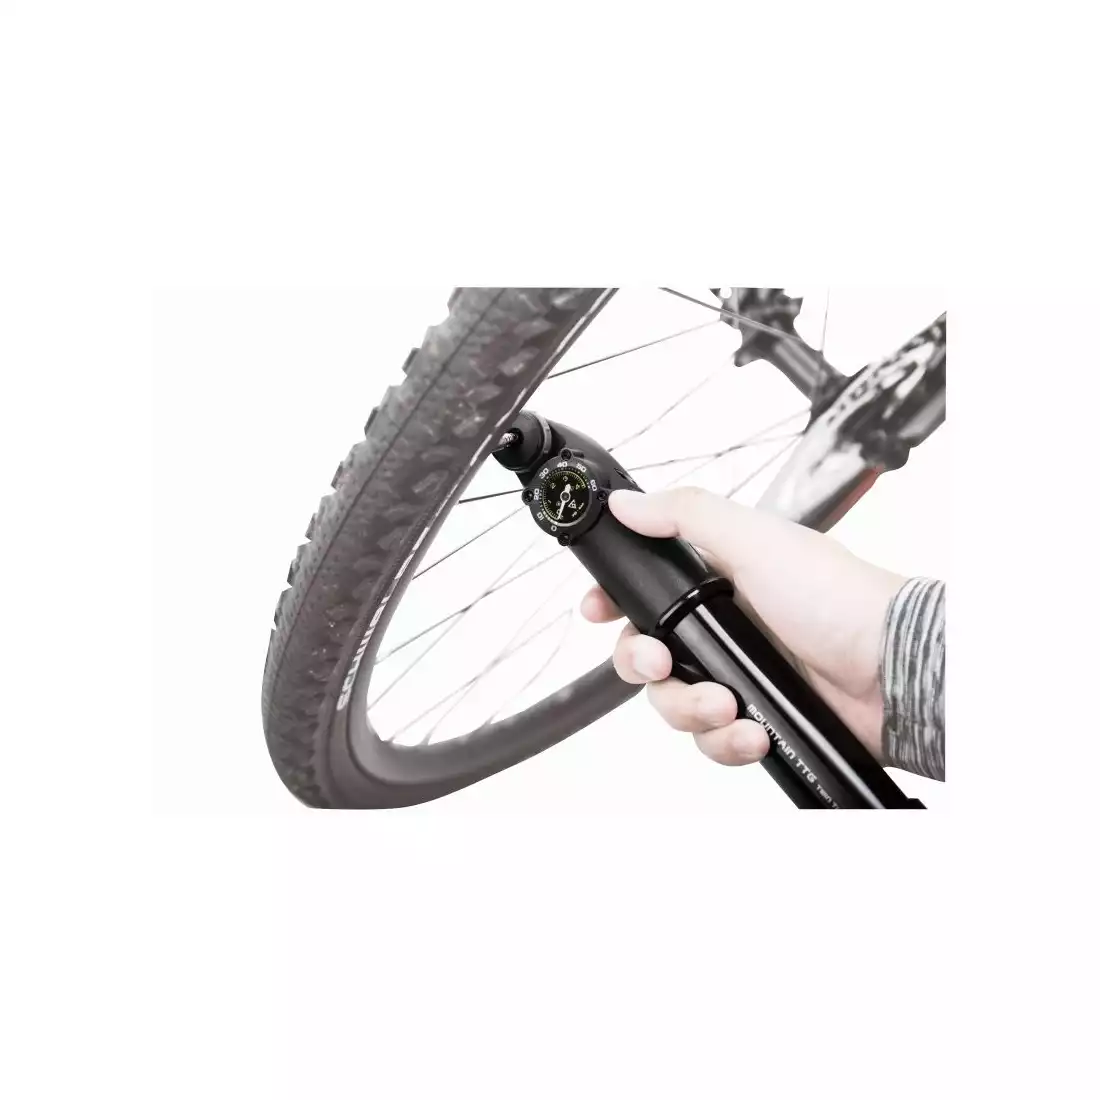 TOPEAK TT G TWIN TURBO kerékpáros szivattyú nyomásmérővel